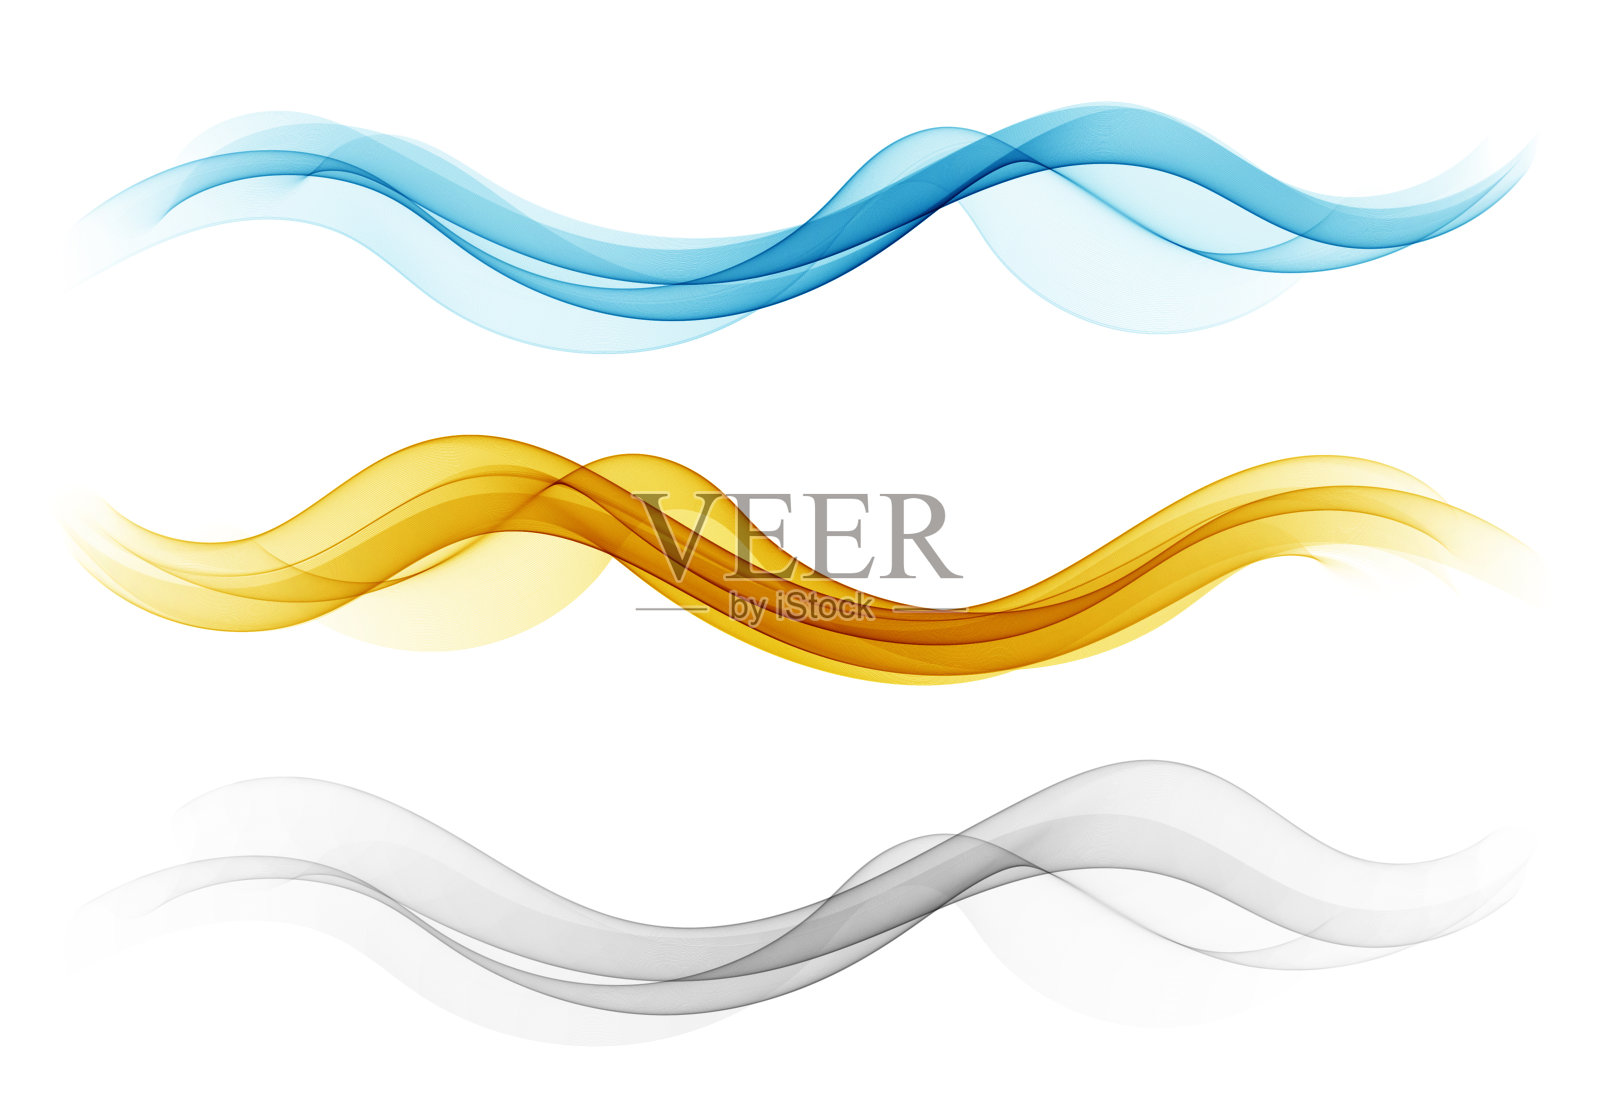 一组抽象的波浪色元素。波浪流元件的设计。插画图片素材